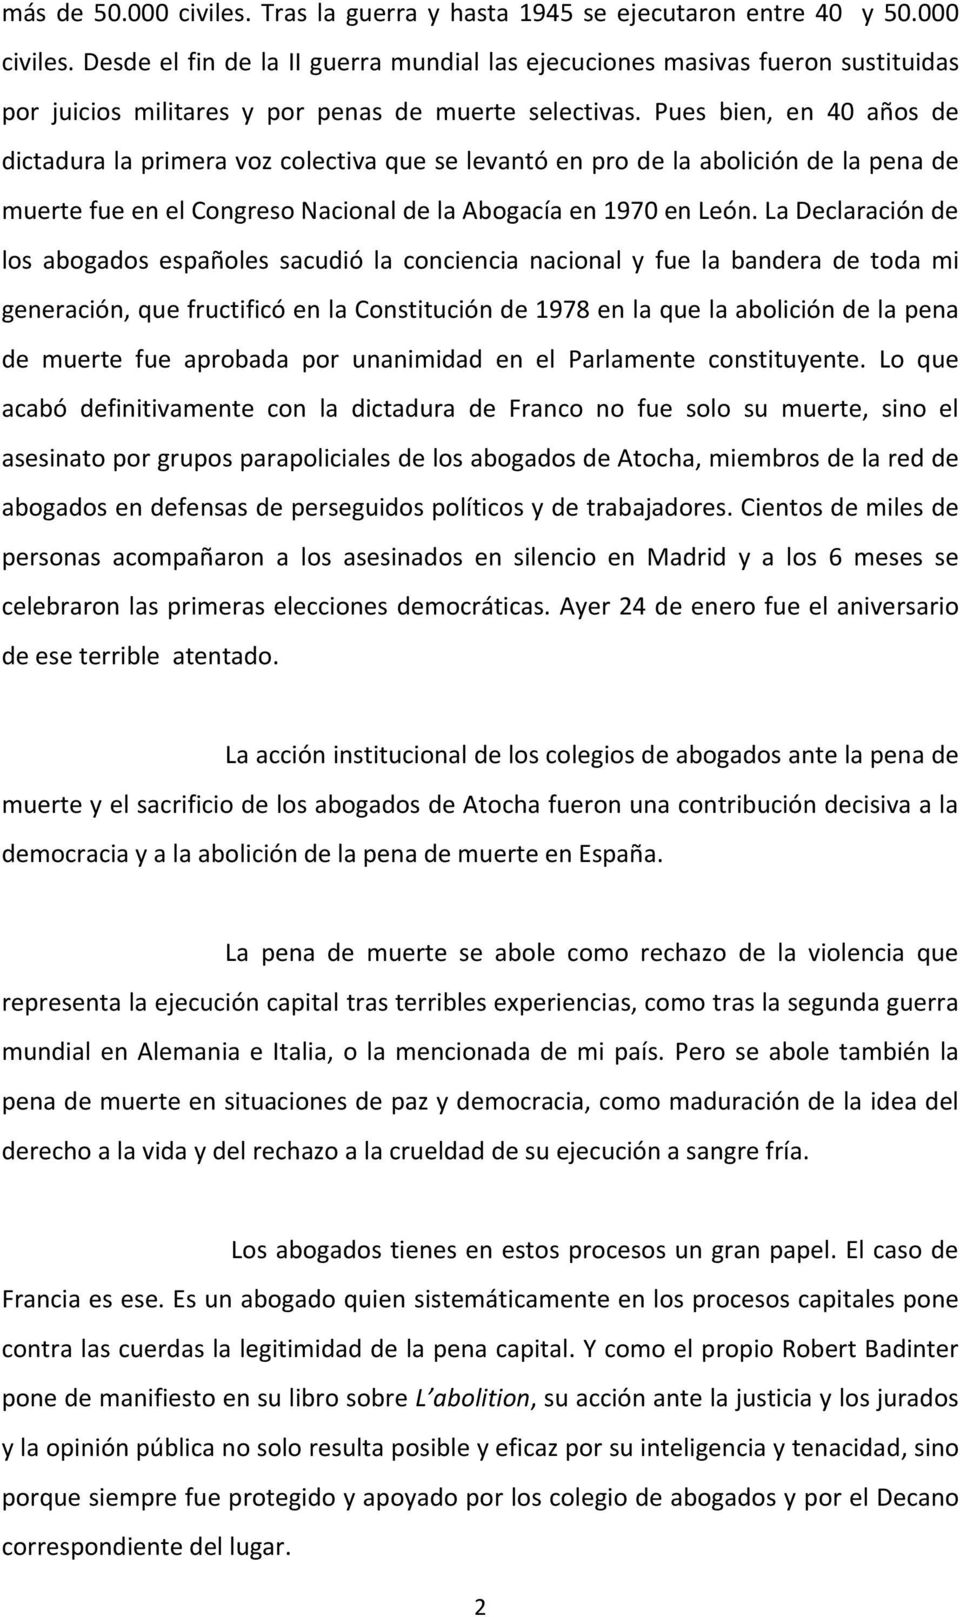 La Declaración de los abogados españoles sacudió la conciencia nacional y fue la bandera de toda mi generación, que fructificó en la Constitución de 1978 en la que la abolición de la pena de muerte